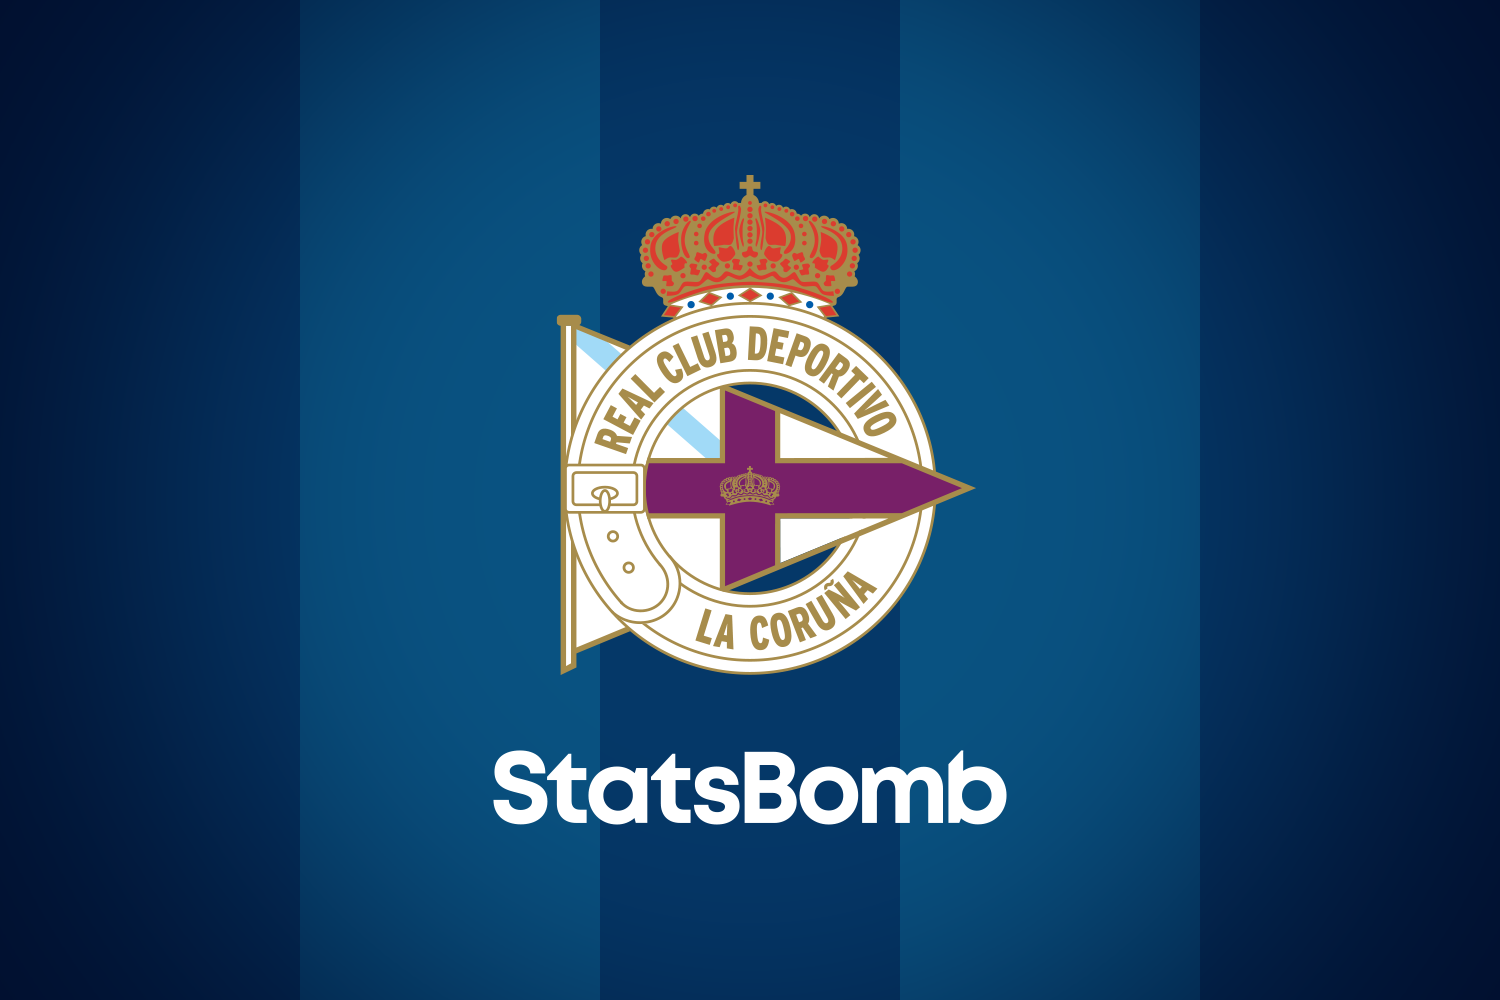 StatsBomb firma un acuerdo con el Deportivo de la Coruña